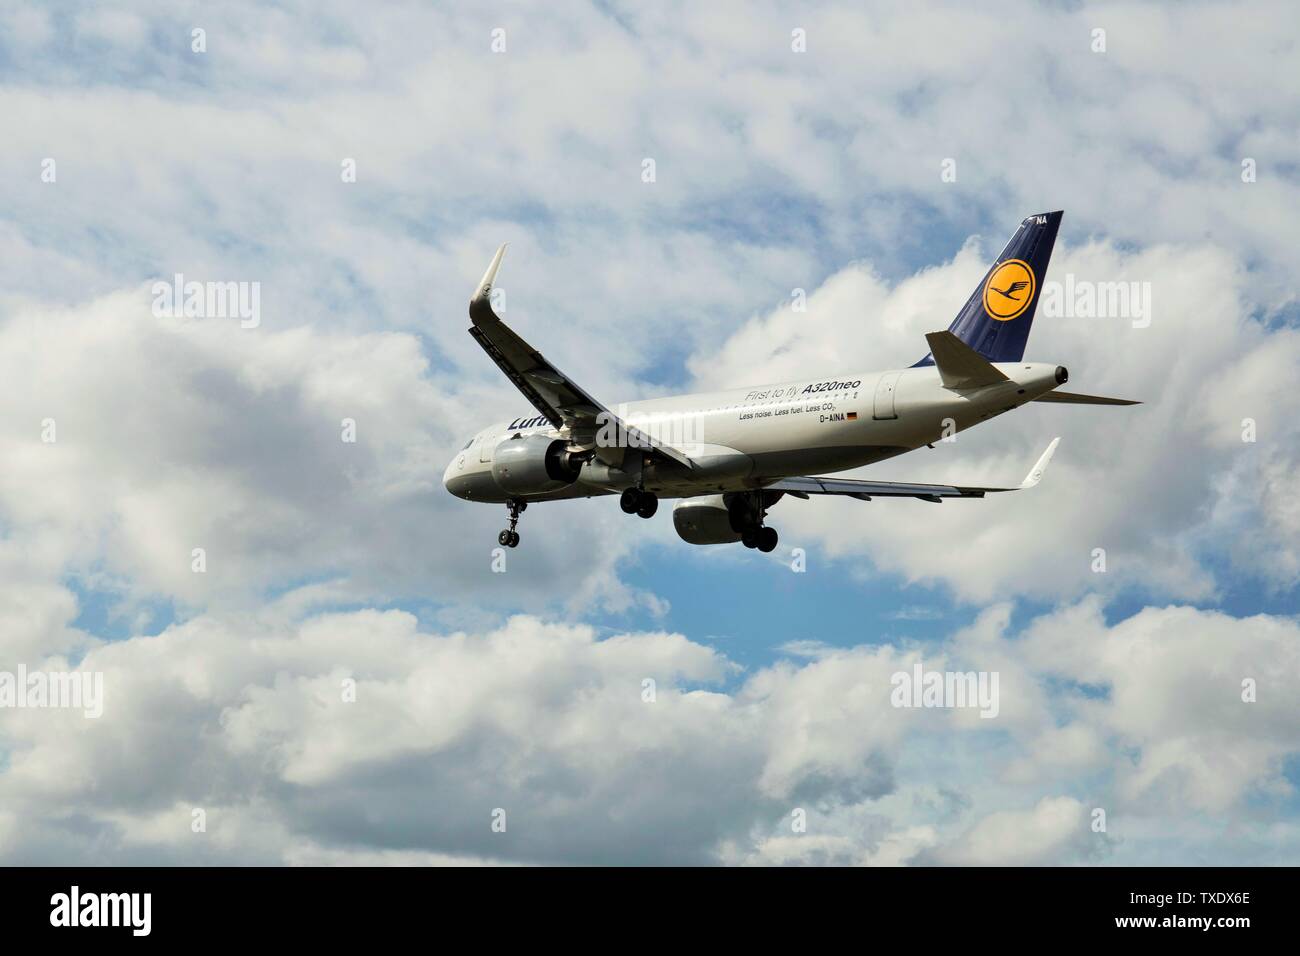 Deutsche Lufthansa AG, Lufthansa, vettore di bandiera della Germania, aereo che atterra all'aeroporto di Heathrow, all'aeroporto di Heathrow, all'aeroporto di Londra, all'aeroporto di Heathrow, a Londra, a Londra, REGNO UNITO Foto Stock